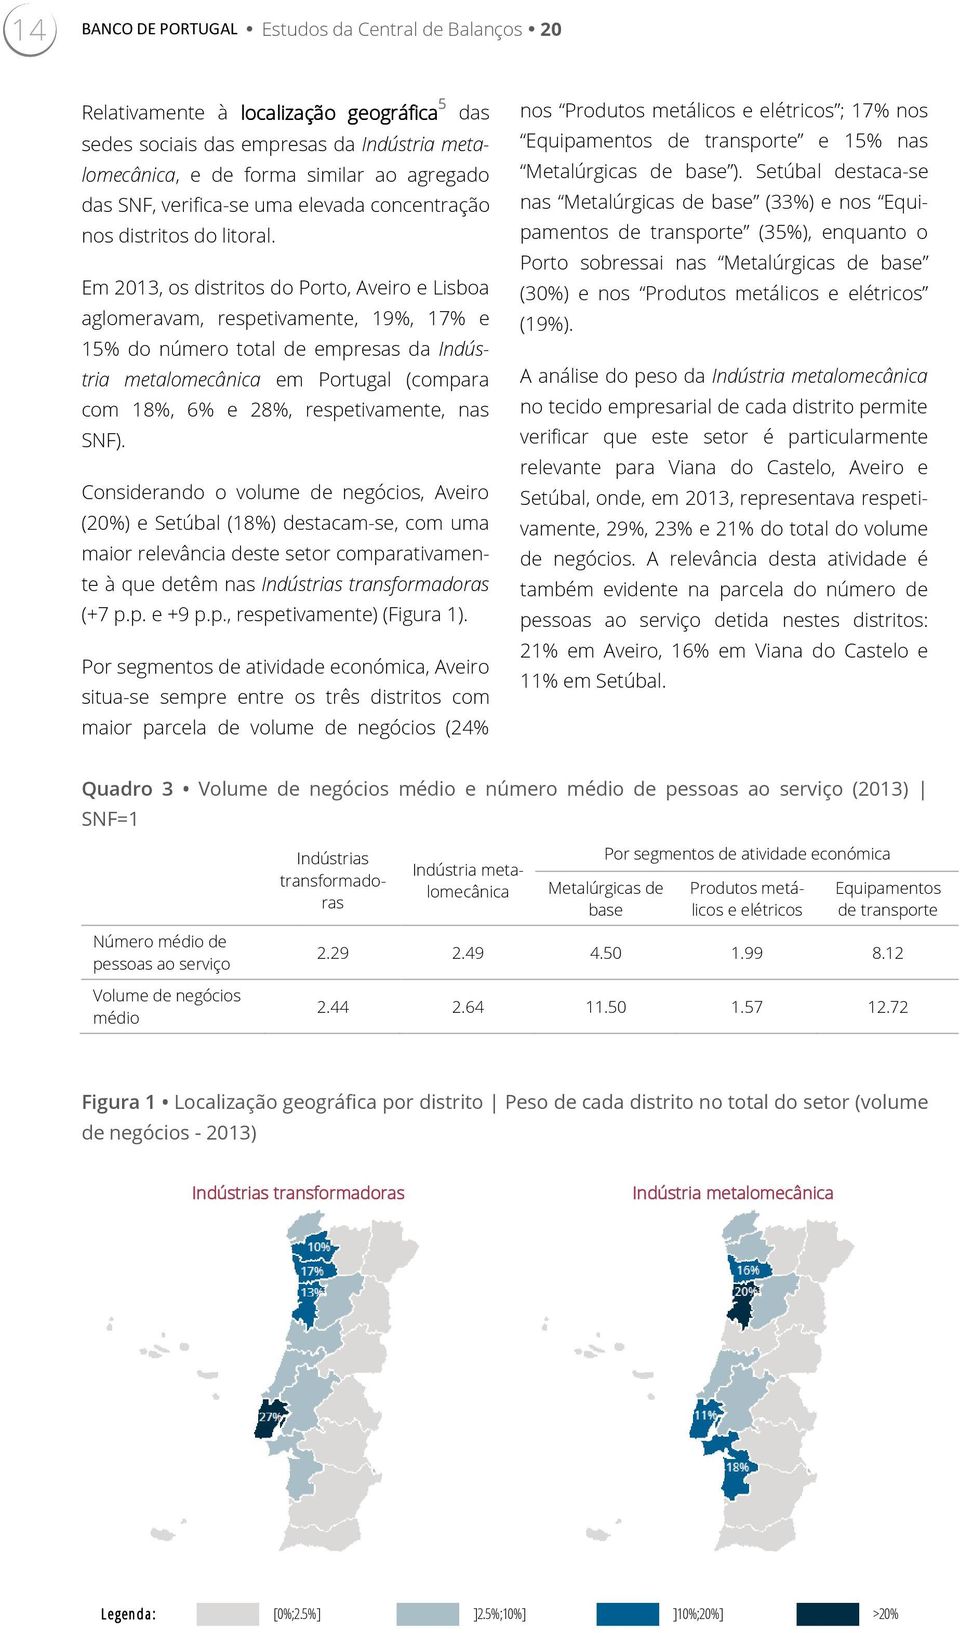 Em 2013, os distritos do Porto, Aveiro e Lisboa aglomeravam, respetivamente, 19%, 17% e te à que detêm nas Indústrias transformadoras (+7 p.p. e +9 p.p., respetivamente) (Figura 1).